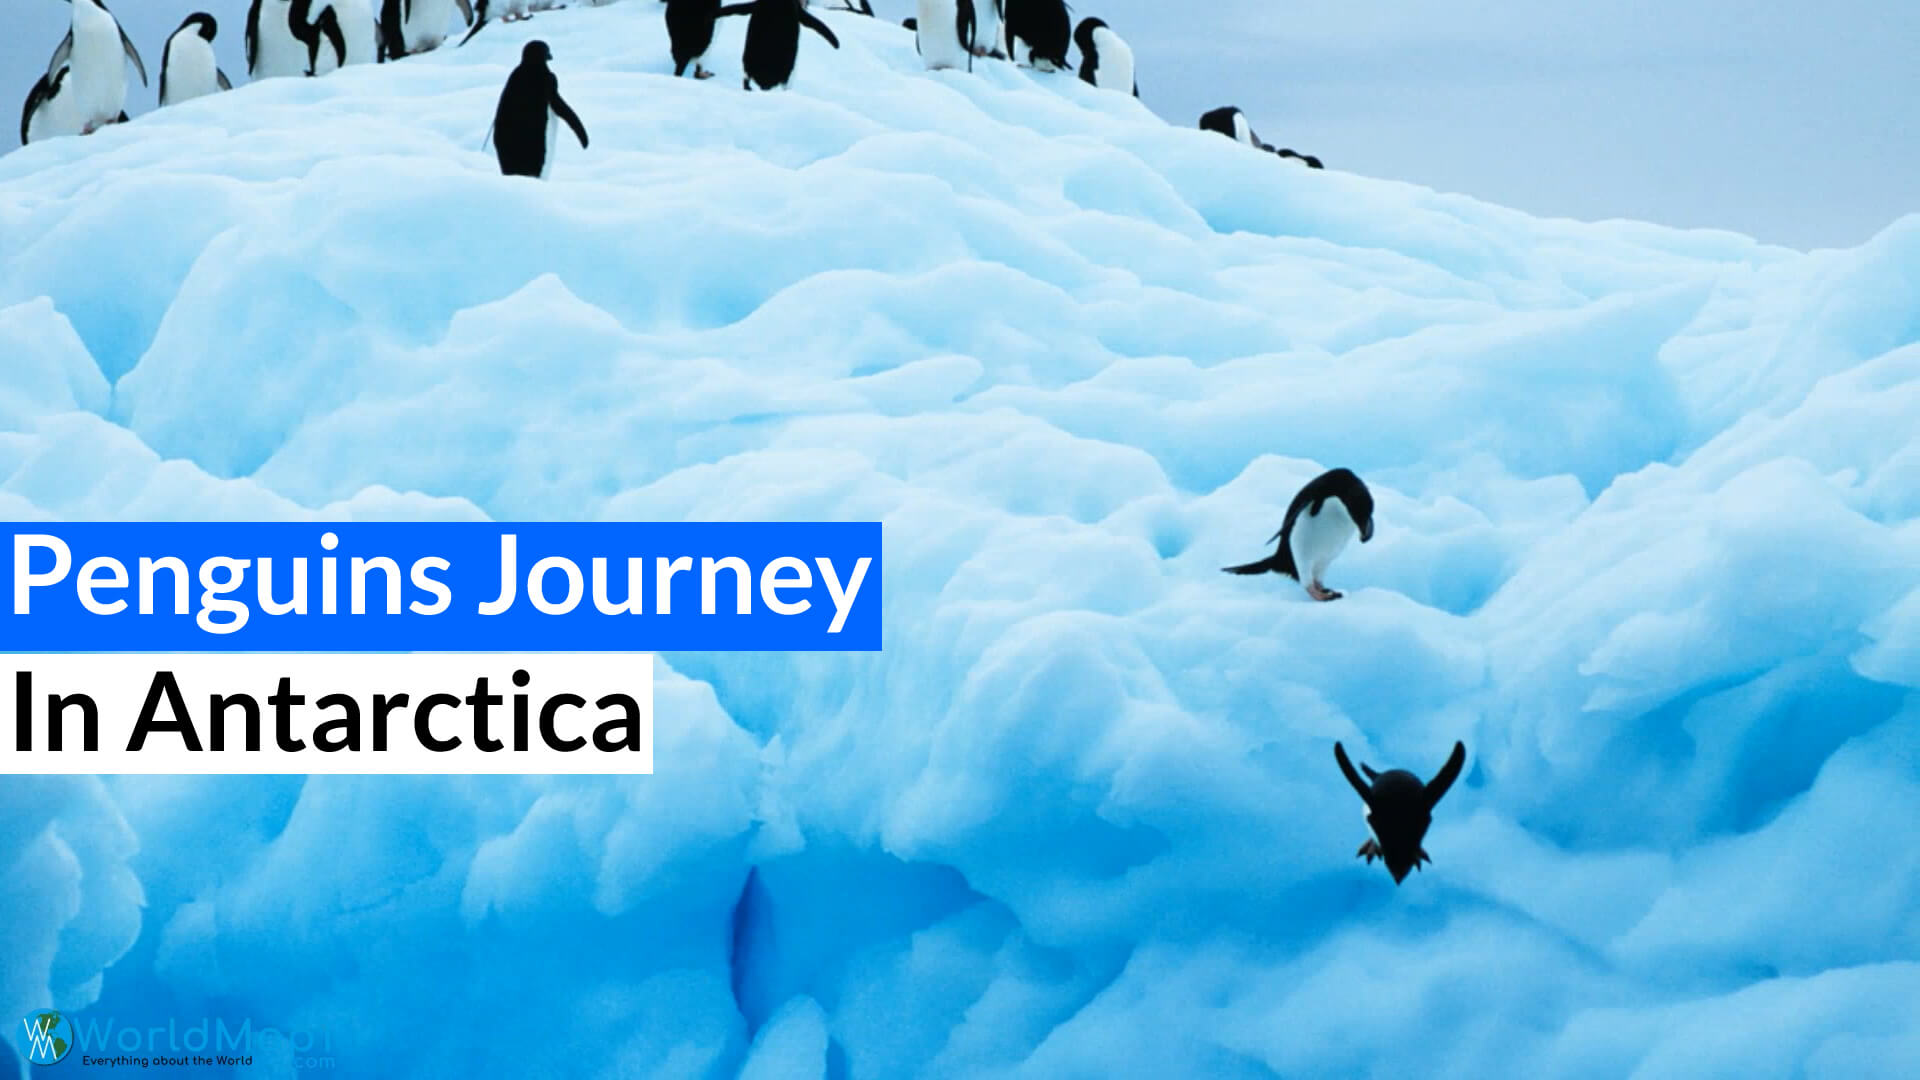 Penguins Journey in Antarctica